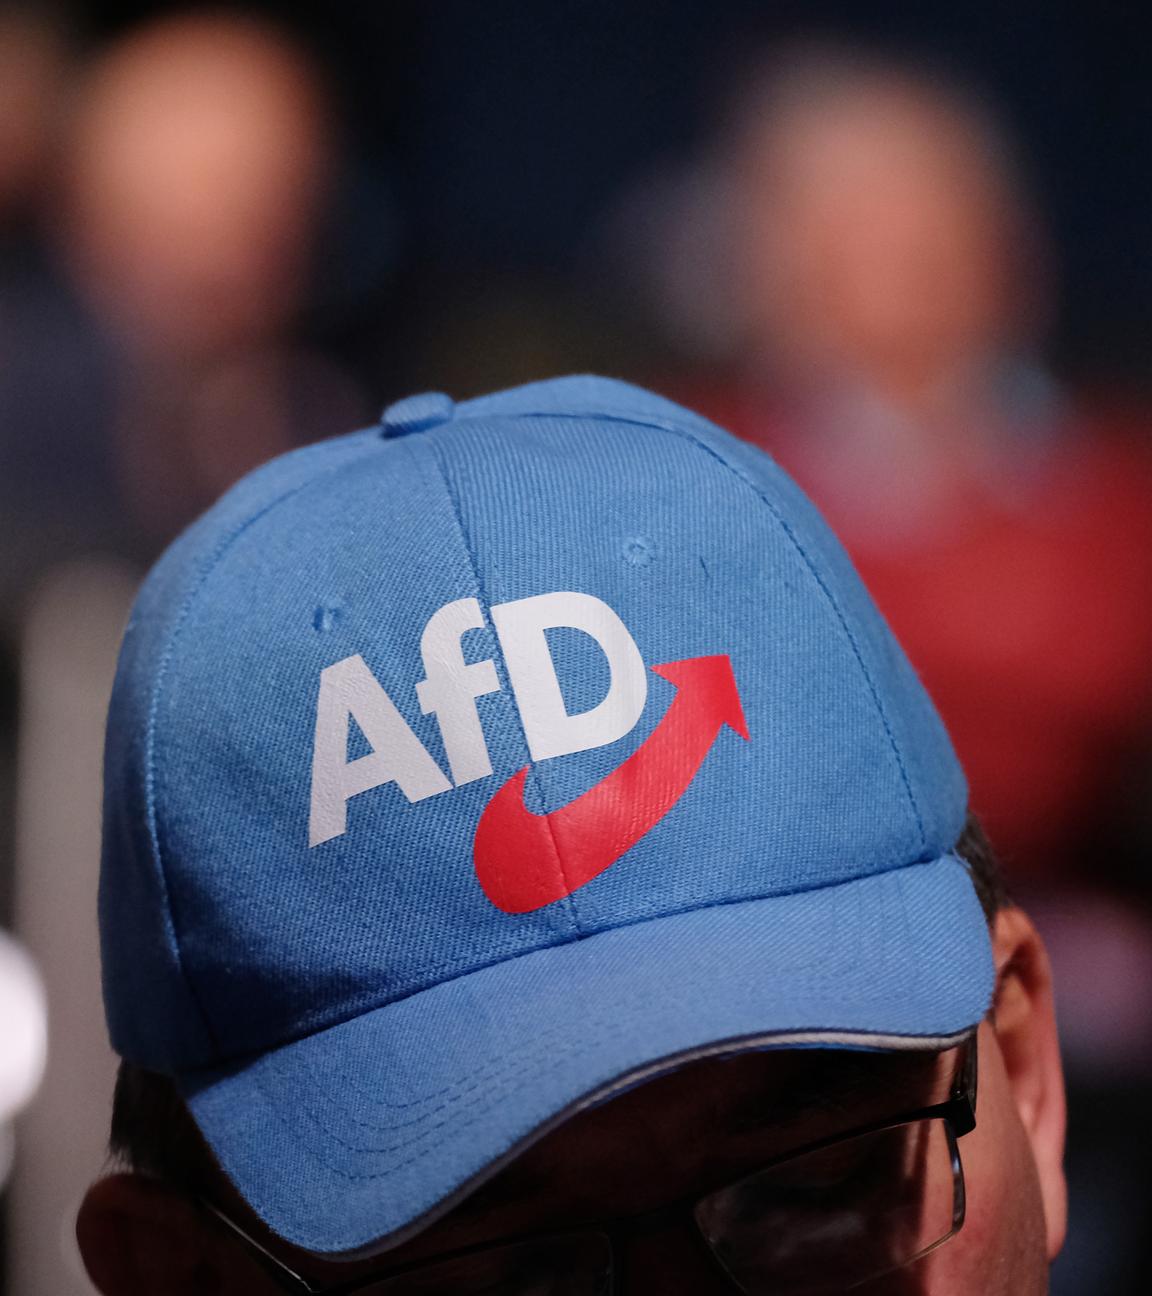 Ein Teilnehmer der Europawahlversammlung der Alternative für Deutschland (AfD) trägt eine AfD-Kappe.